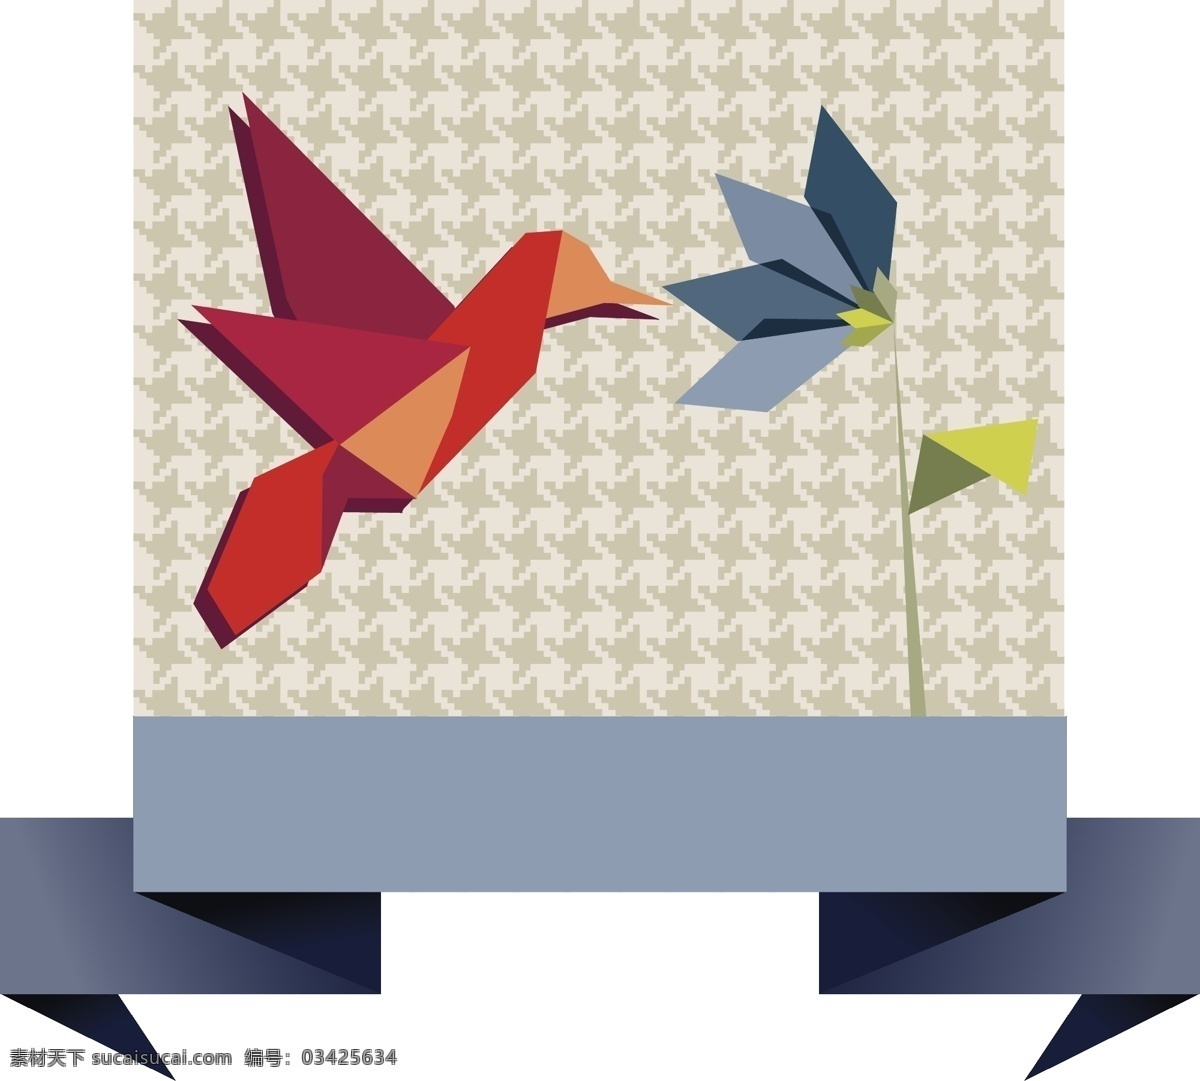 创意 纸鹤 主题 矢量 背景 底图 底纹 模板 应用 折纸 anmin 矢量图 其他矢量图